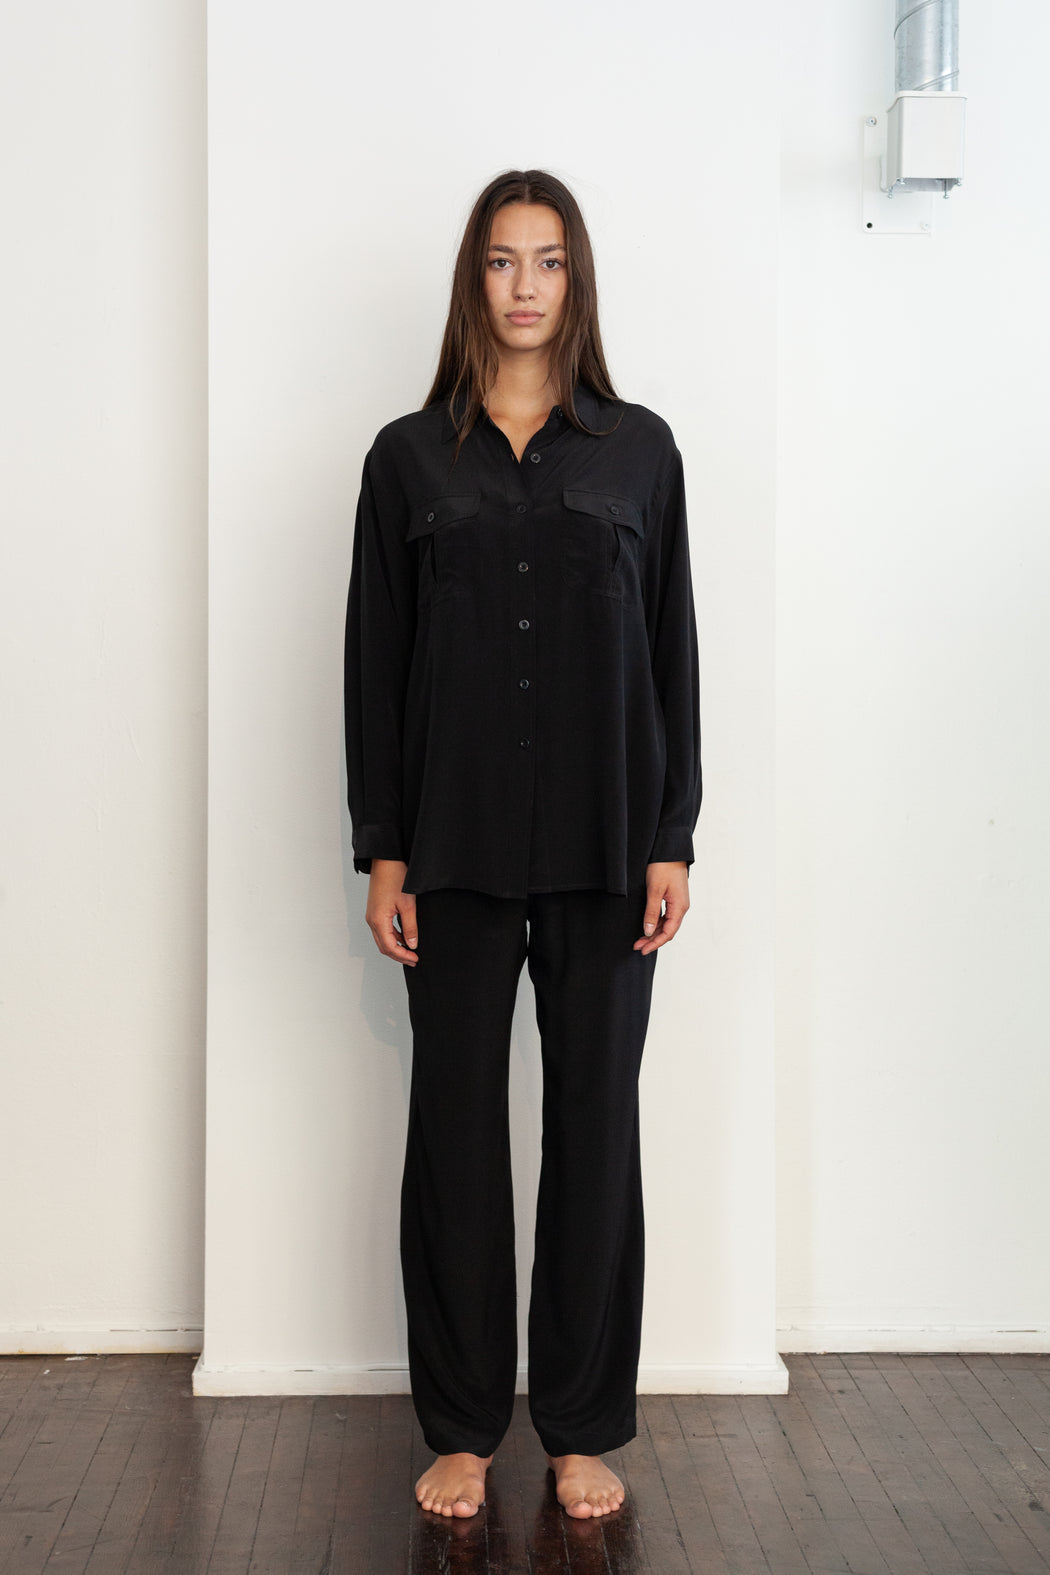 Envelope1976 Havna shirt - CDC silk Shirt Black